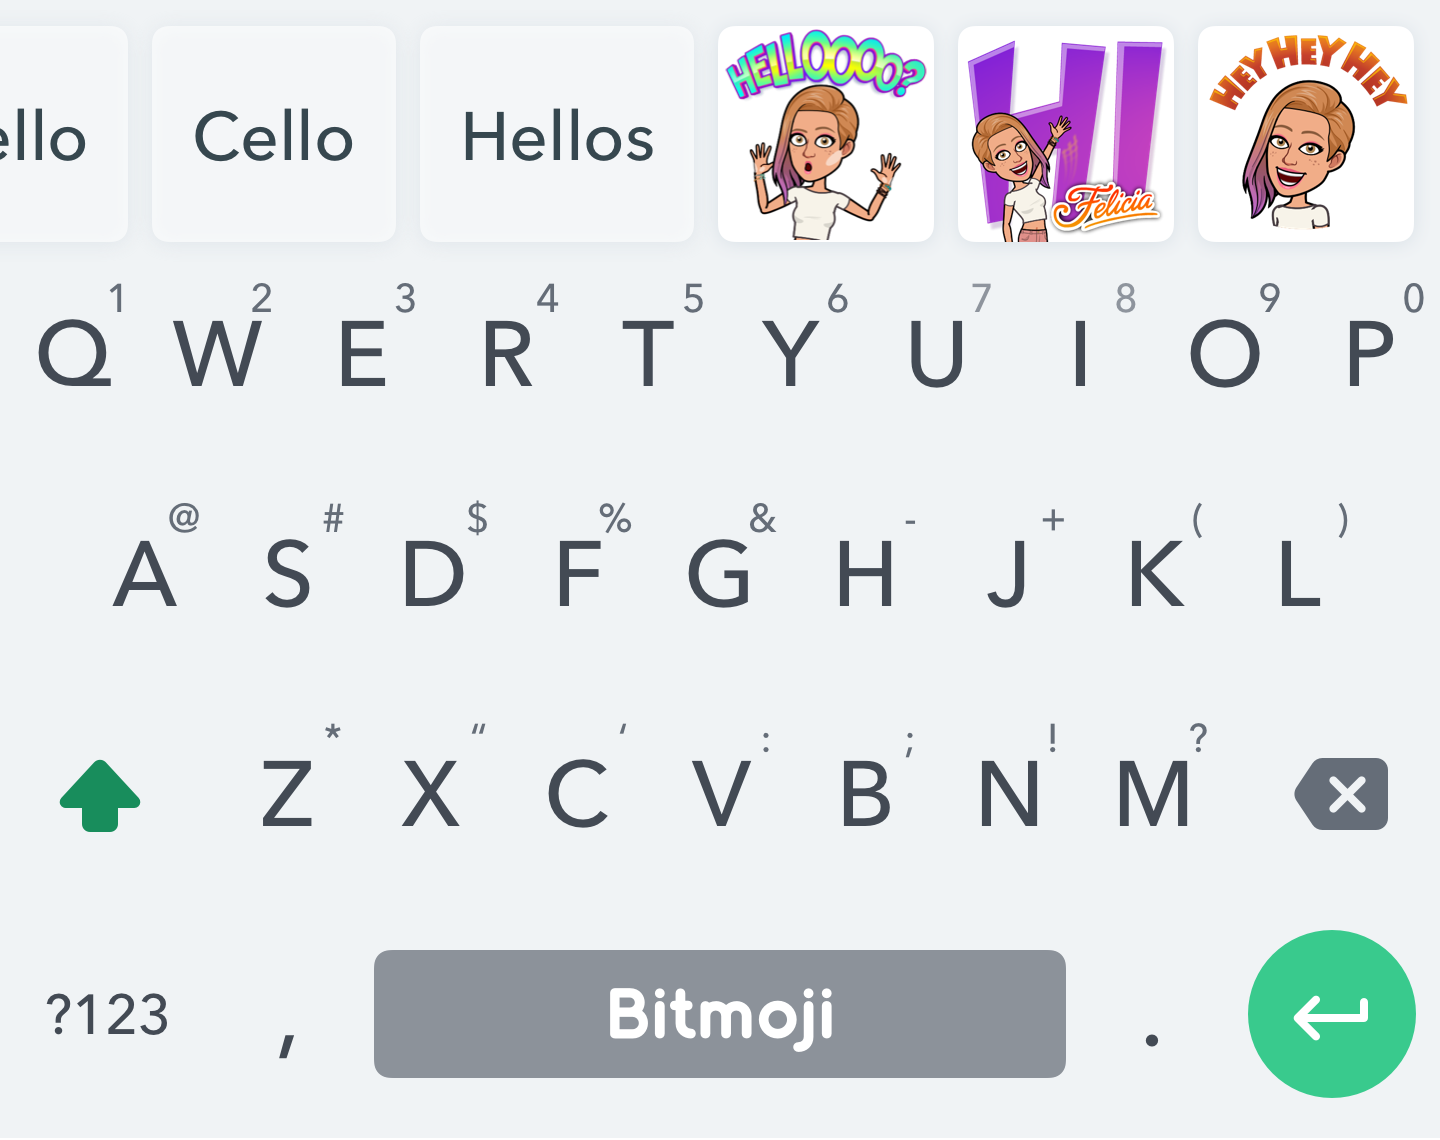 Teclado alfabético com palavras-chave em cima e sugestões de adesivos Bitmoji baseados no que o usuário está digitando.